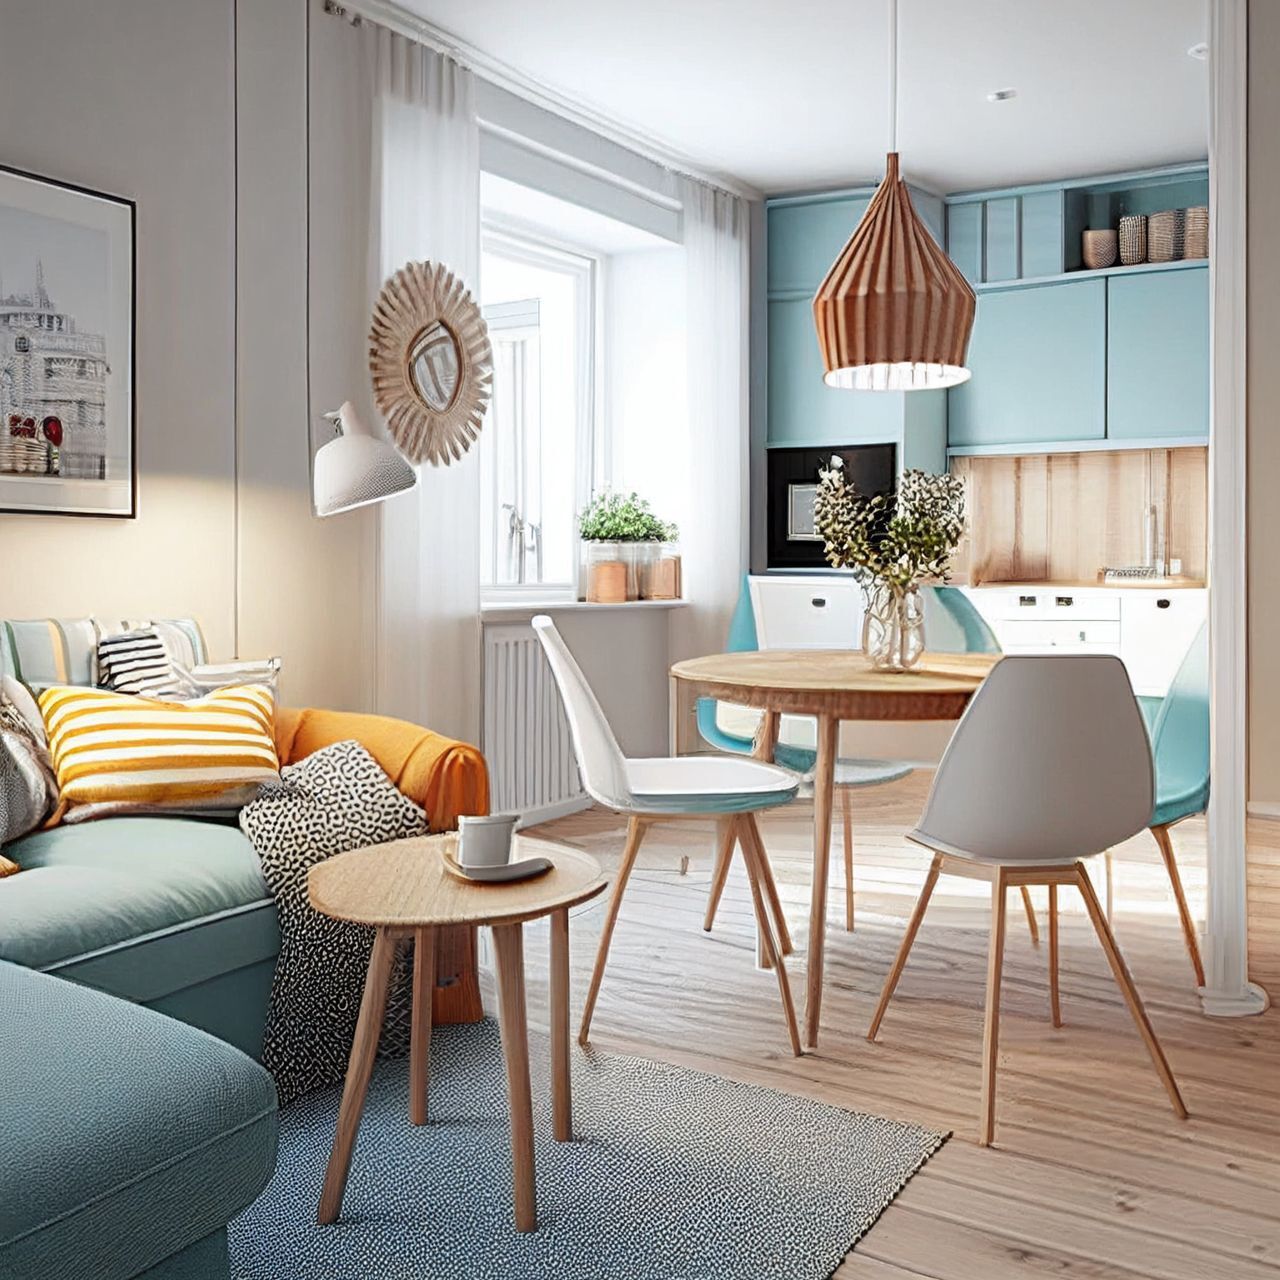 Schweizer Immobilieninvestor weiter in Schweden aktiv: Schweizer Hotel Investments AG & REBA IMMOBILIEN AG beteiligen sich an einem weiteren Bauprojekt in Schweden